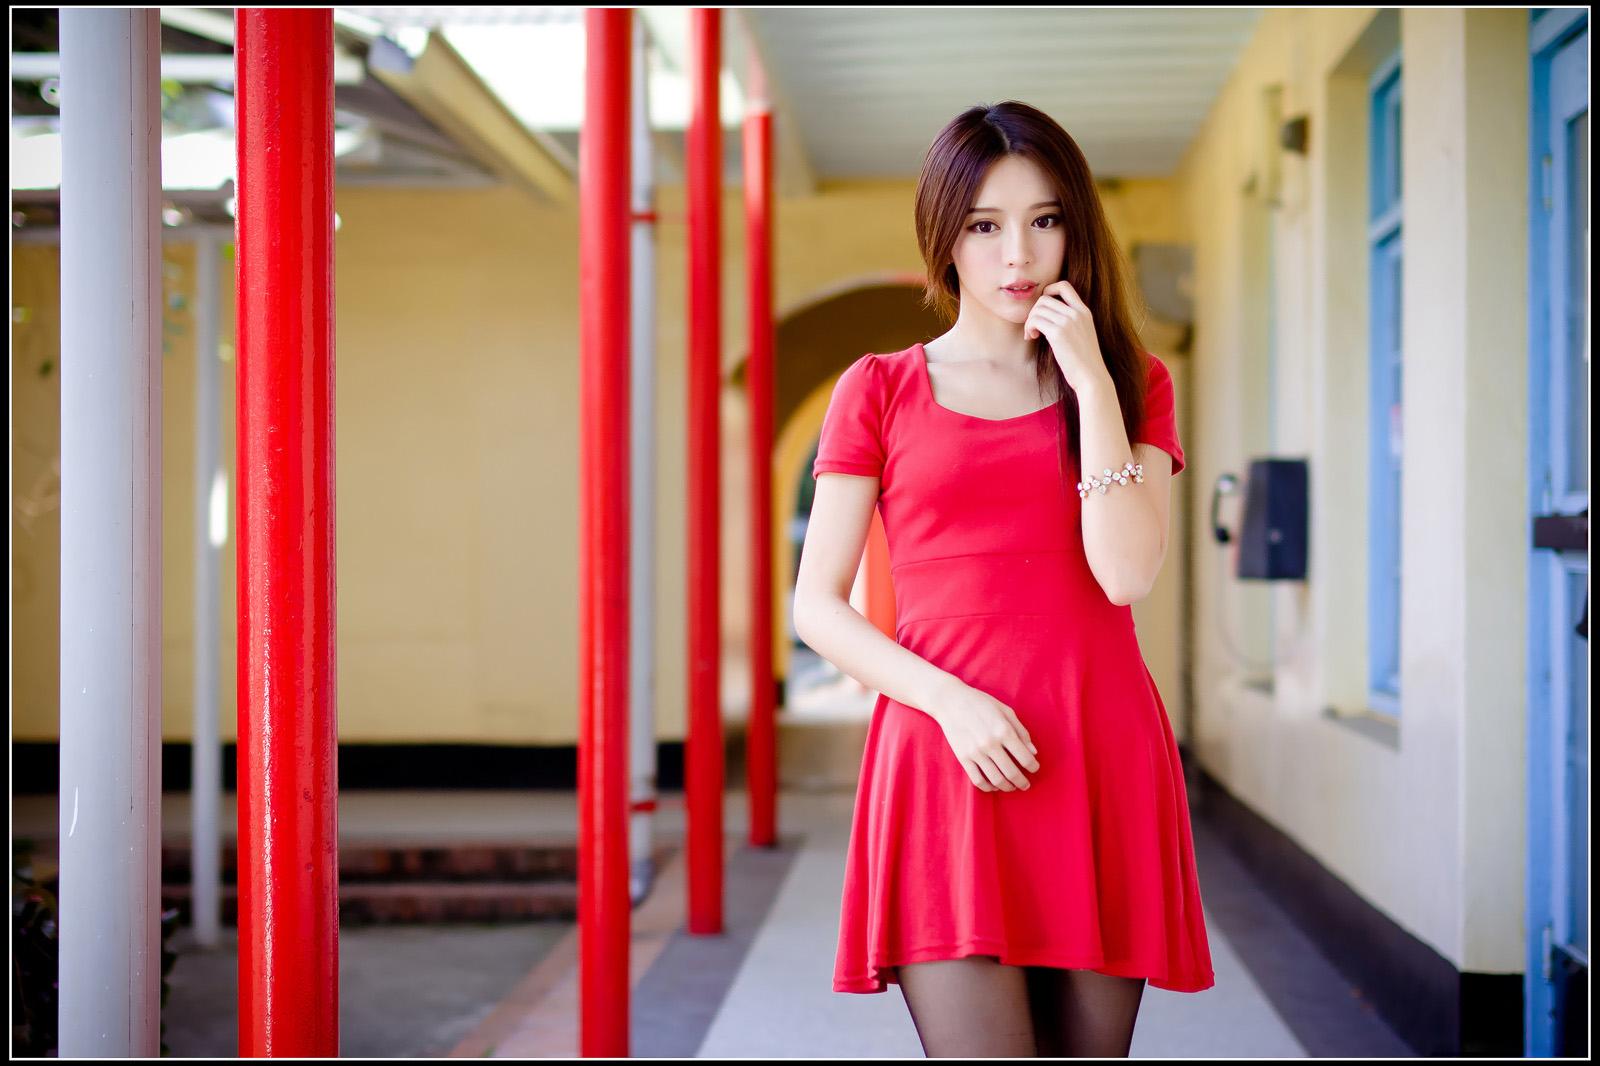 漂亮的红裙美少女张齐郡JULIE外拍写真,漂亮的红裙美少女张齐郡JULIE外拍写真